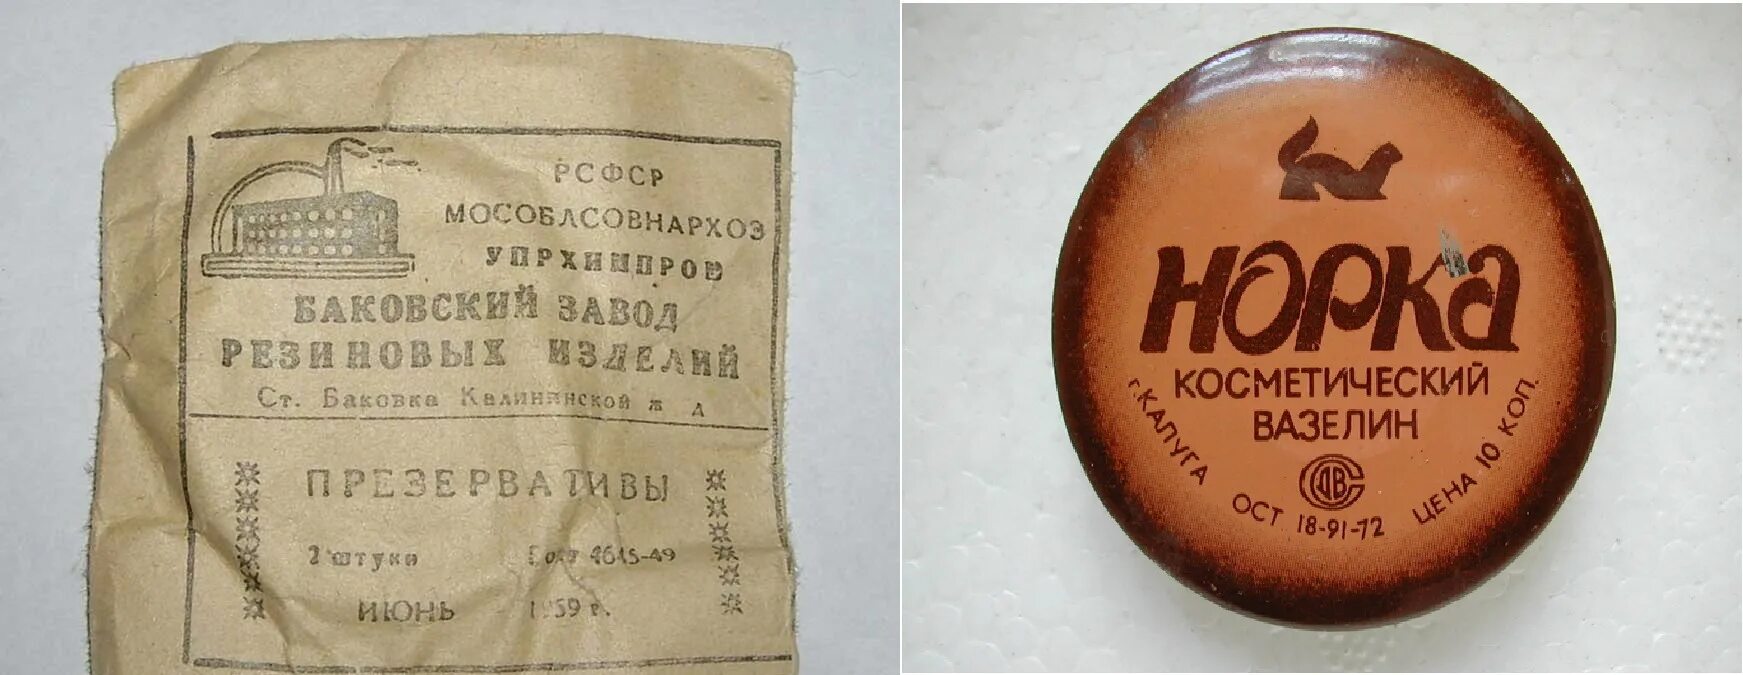 Резиновые изделия ссср. Резиновое изделие 2 в СССР. Резиновые изделия. Старые советские презервативы. Резиновое изделие номер.